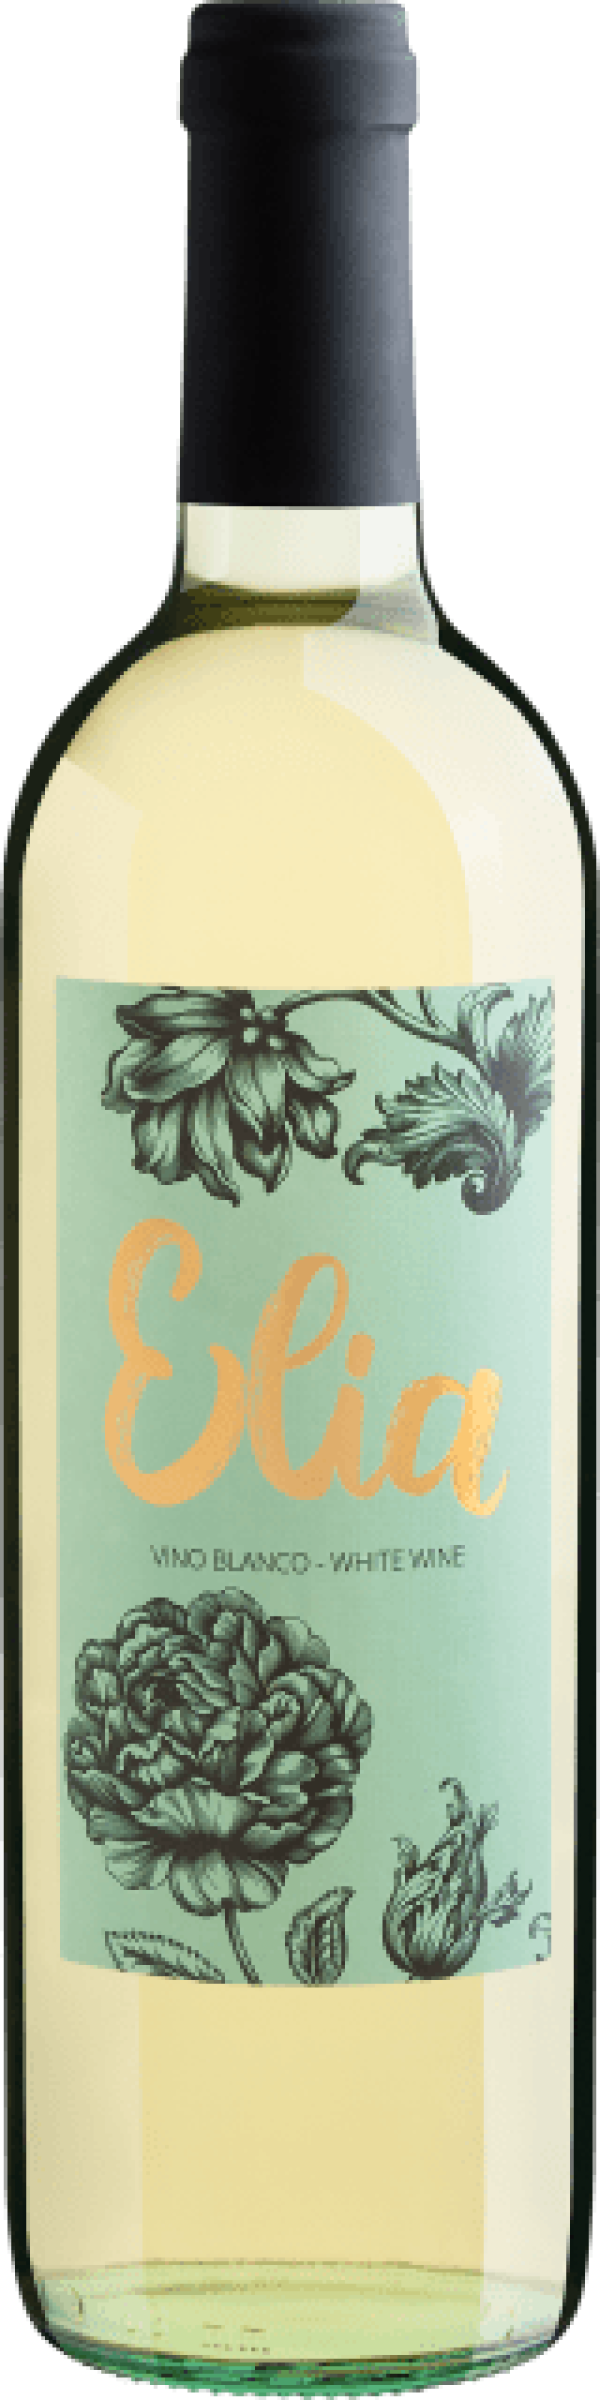 Elia White Wine